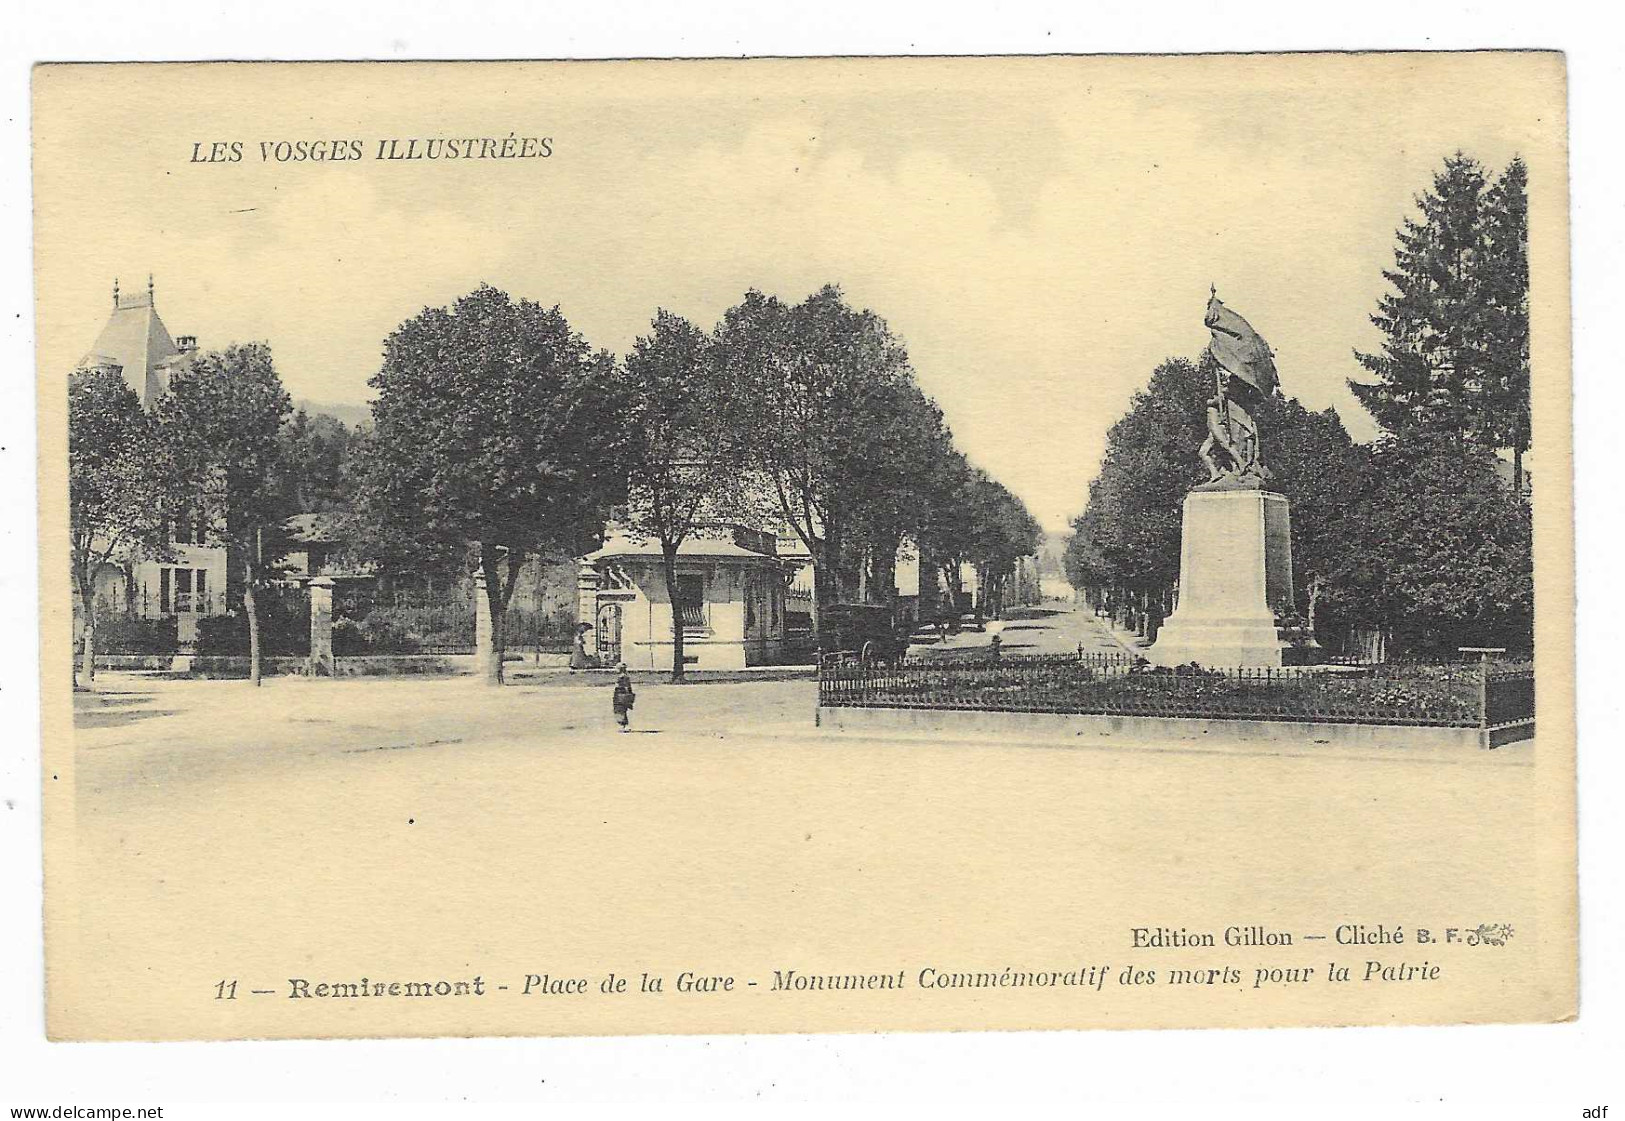 CPA REMIREMONT, PLACE DE LA GARE, MONUMENT COMMEMORATIF DES MORTS POUR LA PATRIE, VOSGES 88 - Remiremont